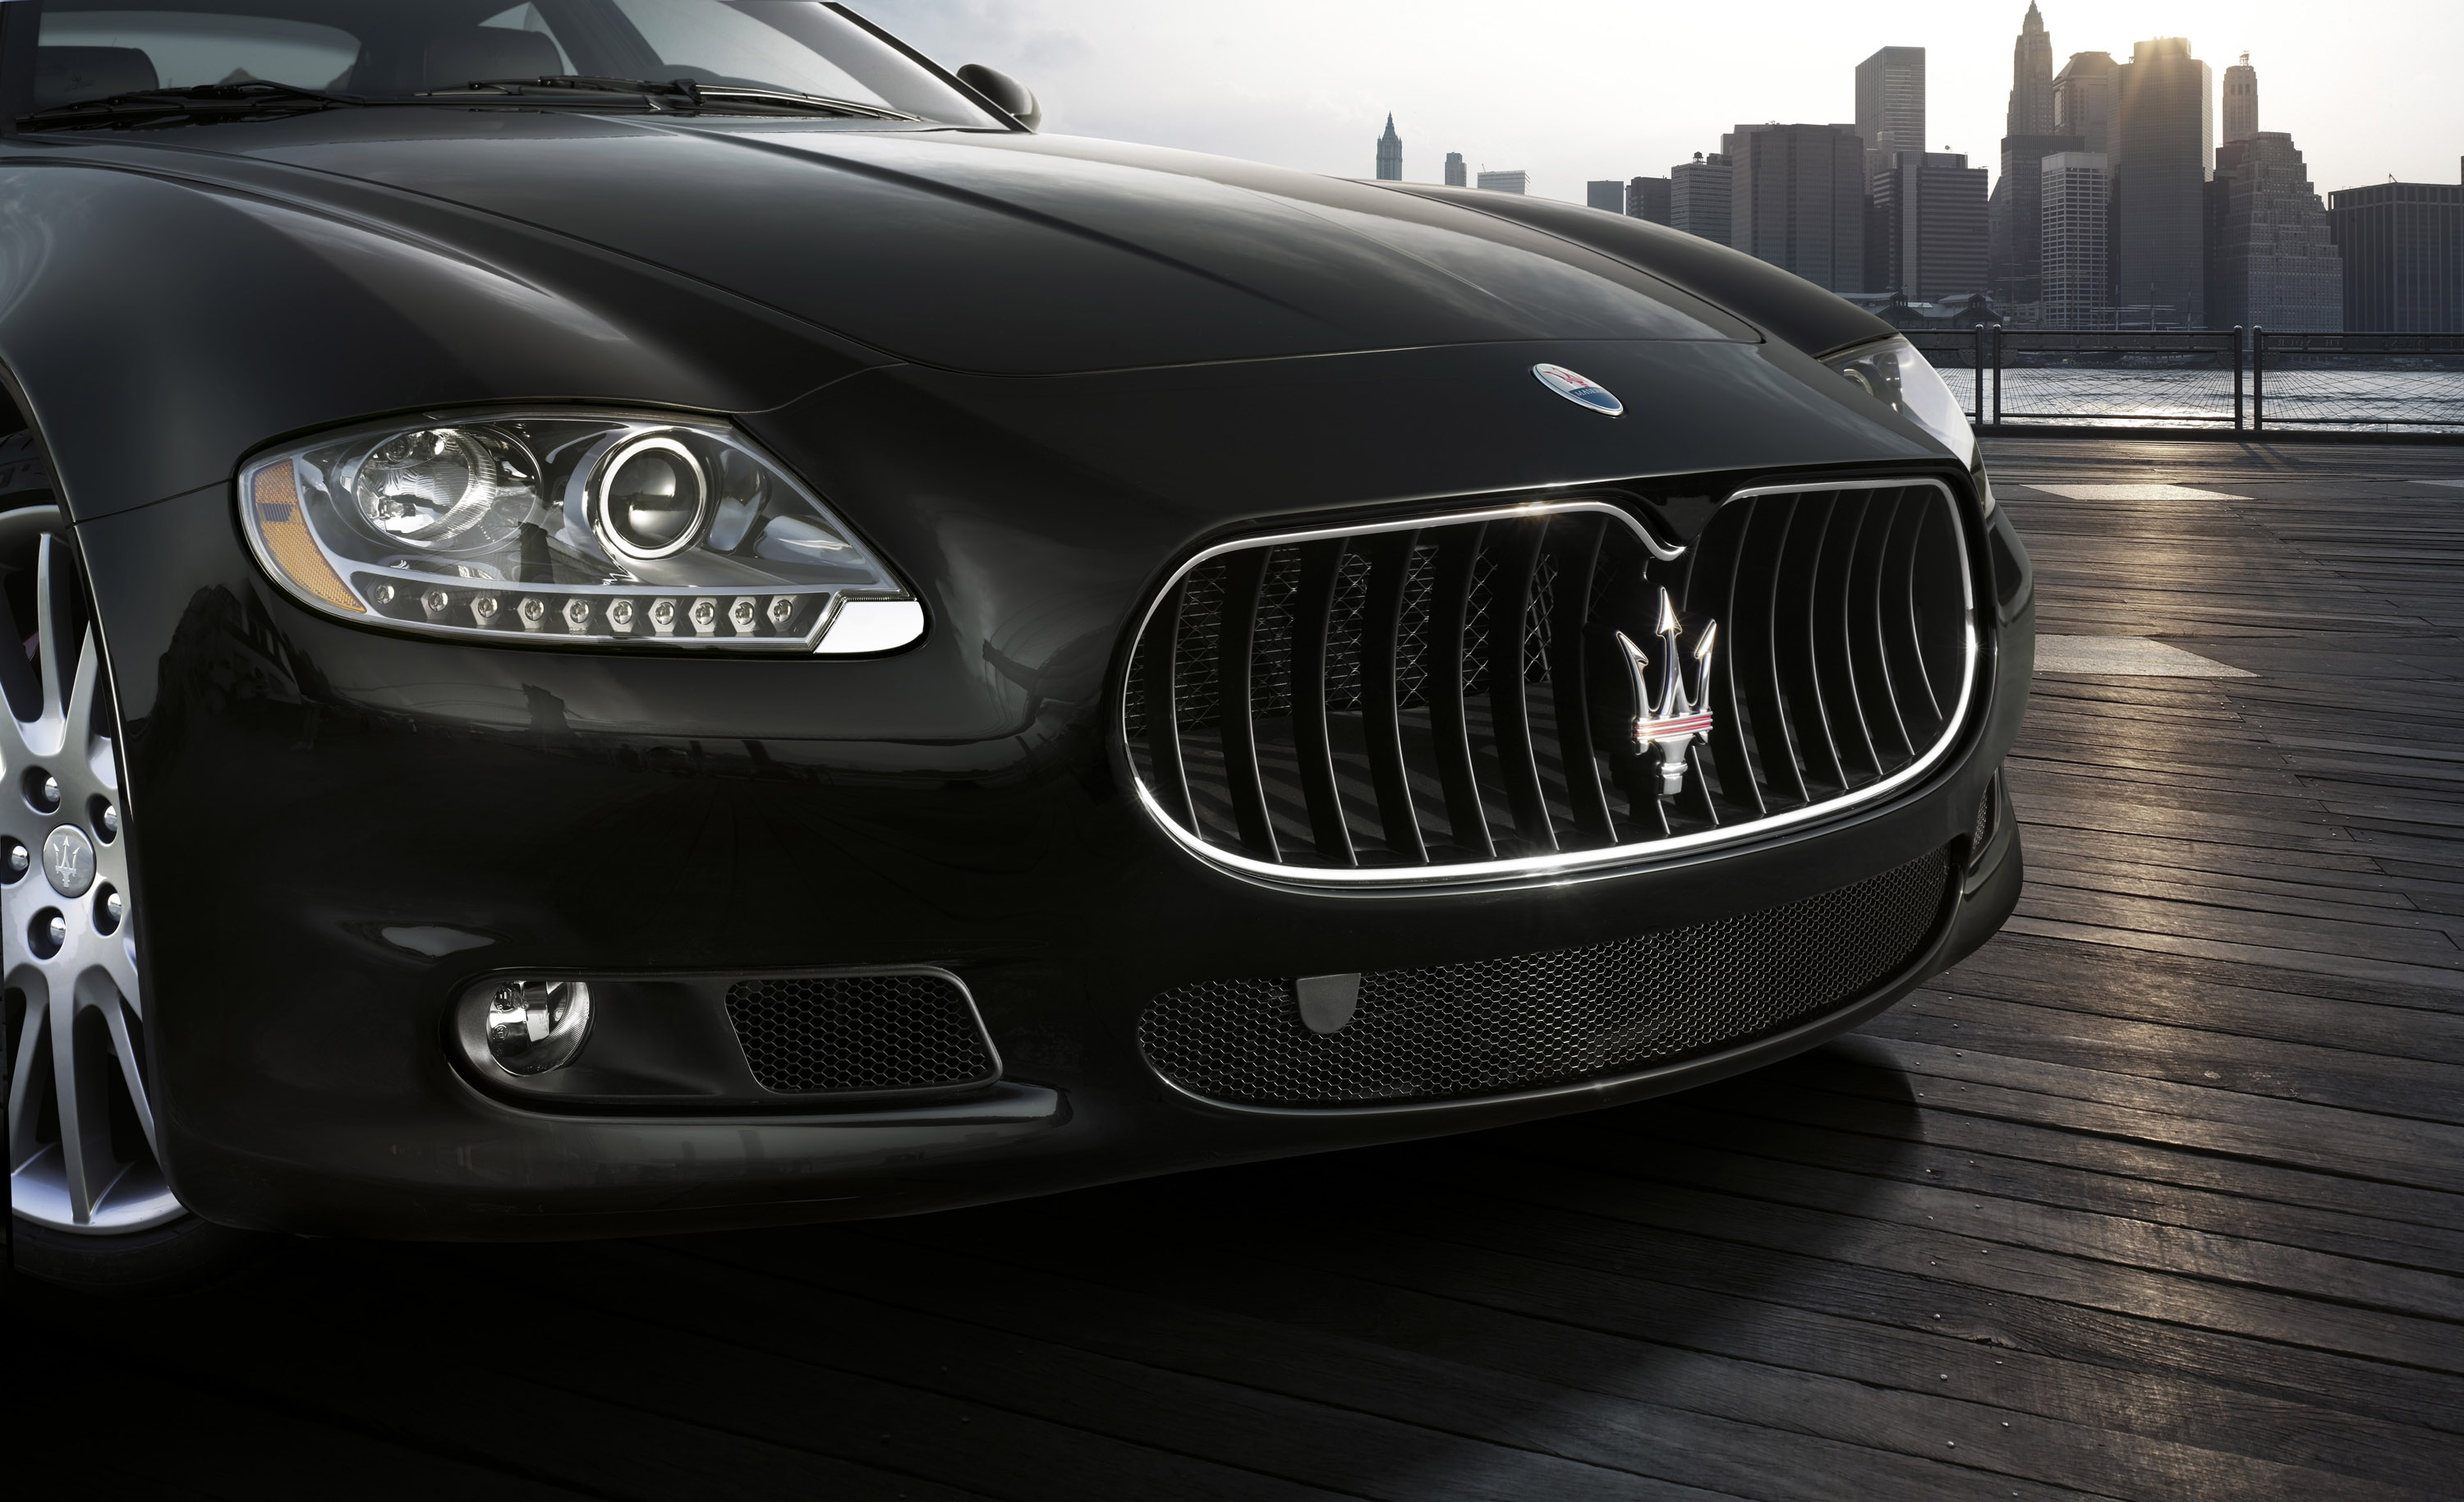 Maserati Quattroporte Gts Wallpapers